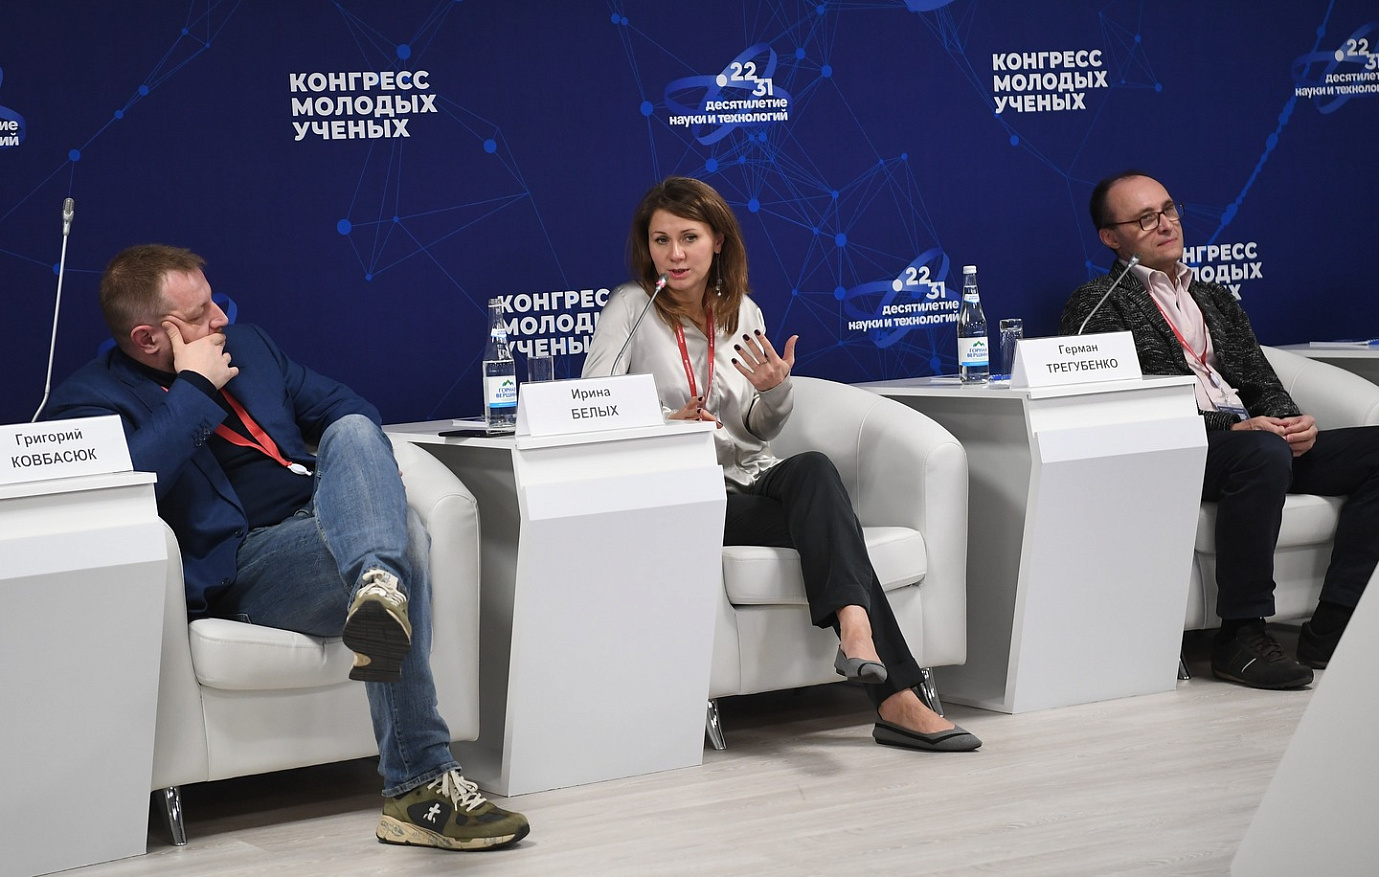 Насколько полно представлена наука в российском кино обсудили в ходе дискуссии, организованной Фондом Инносоциум на Конгрессе молодых ученых